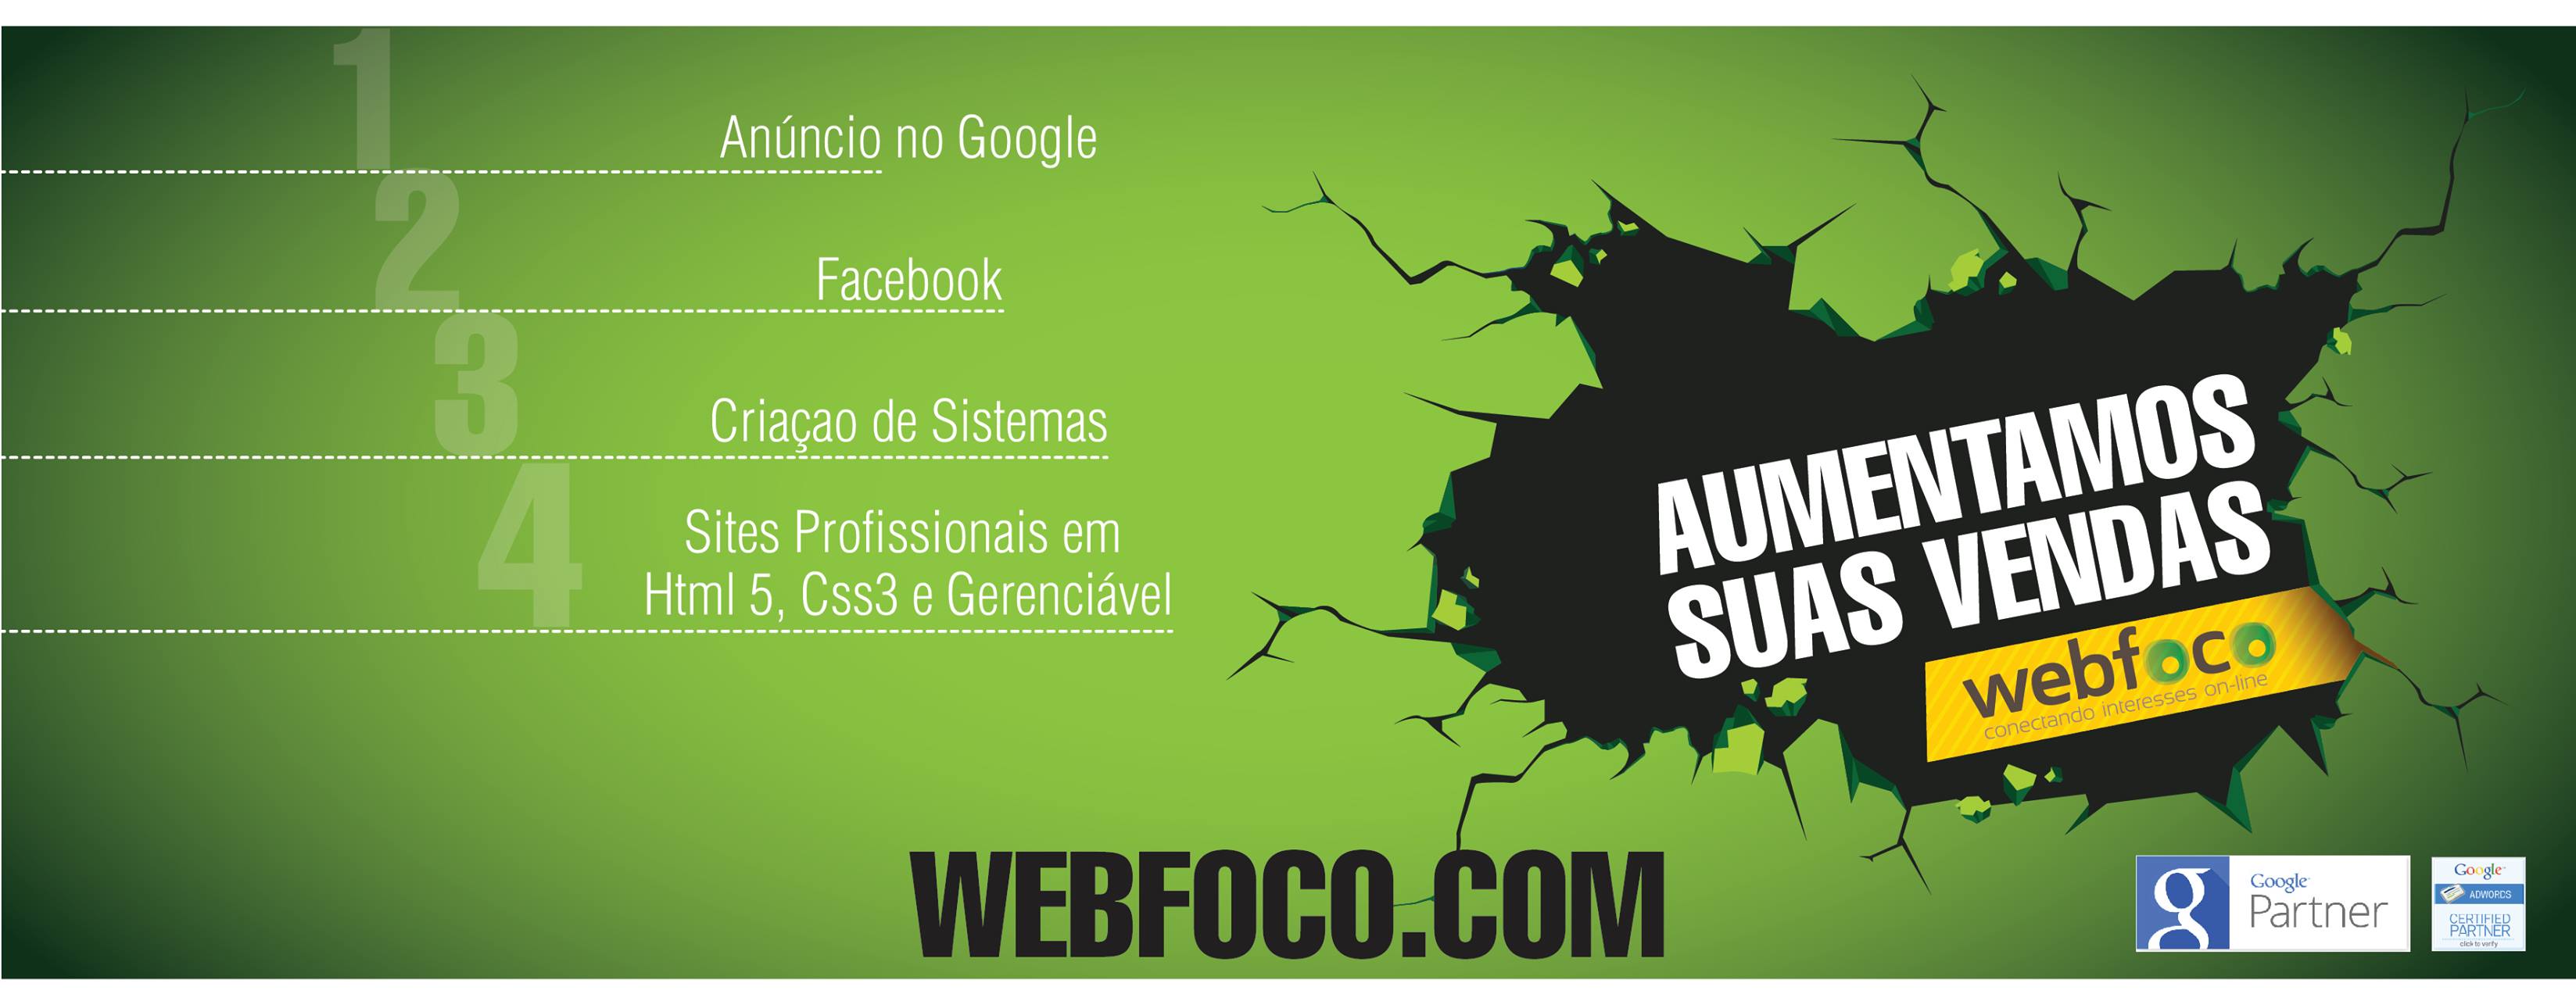 Webfoco